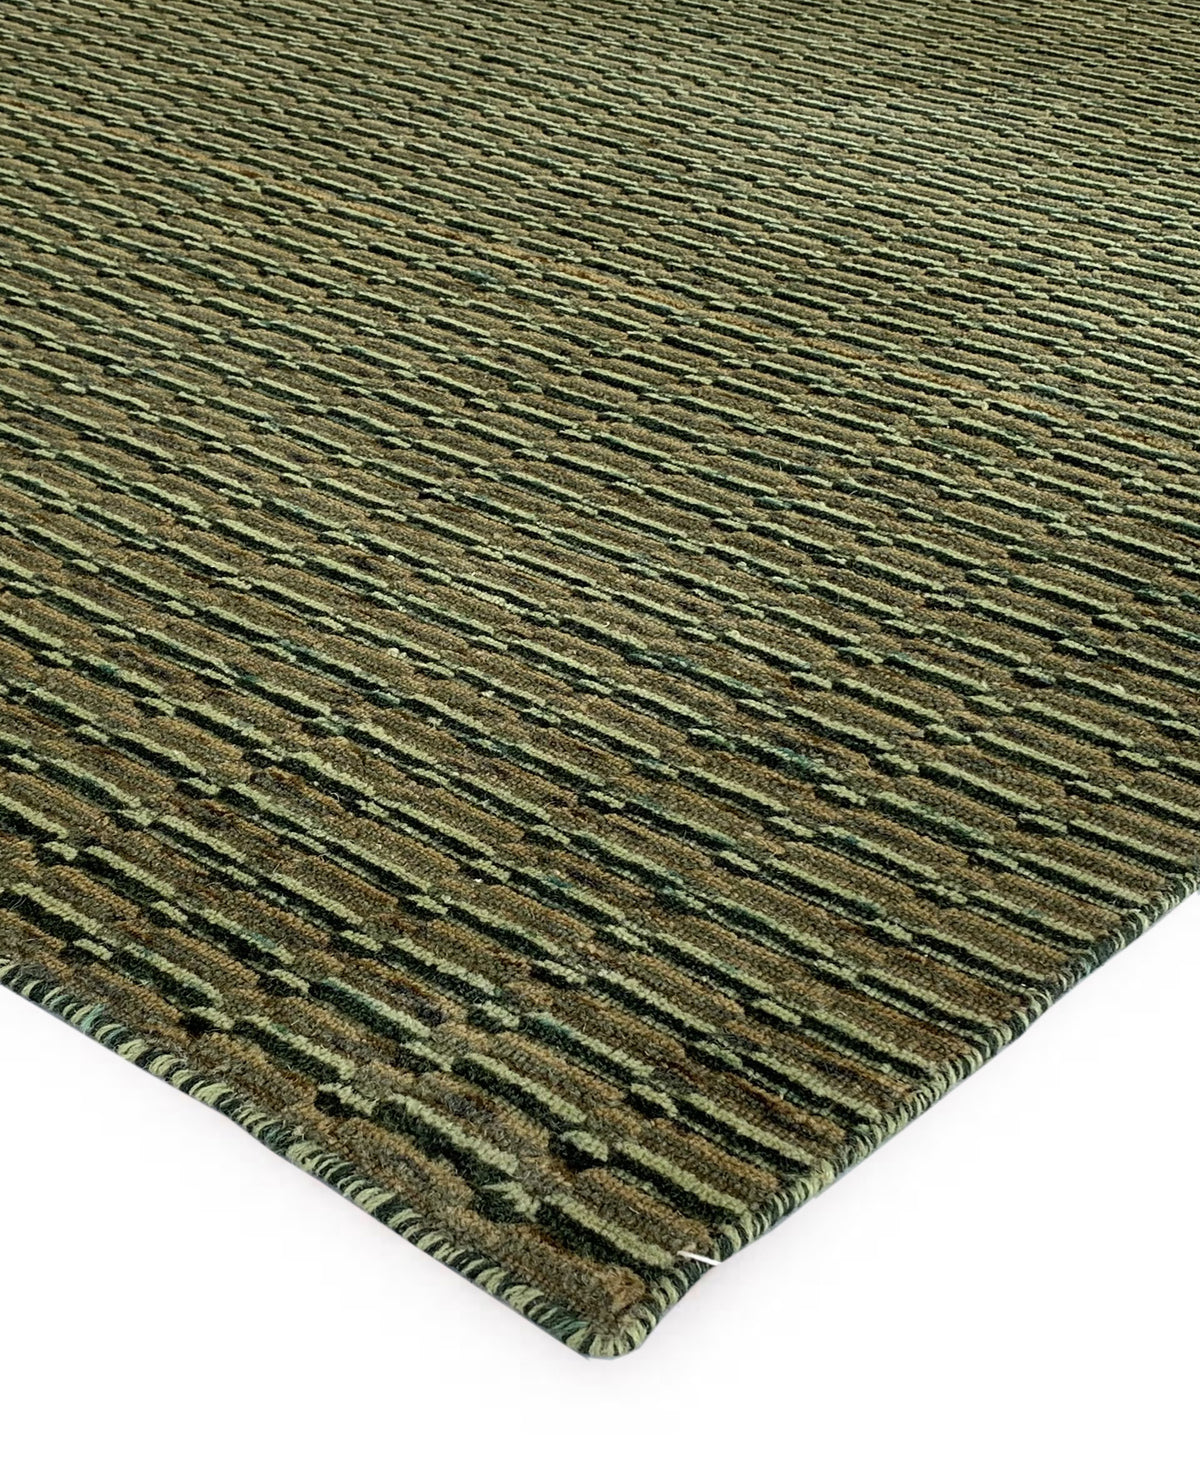 Rugslane Plain Textured Woolen Box Design Green Carpet 4.6ft X 6.6ft